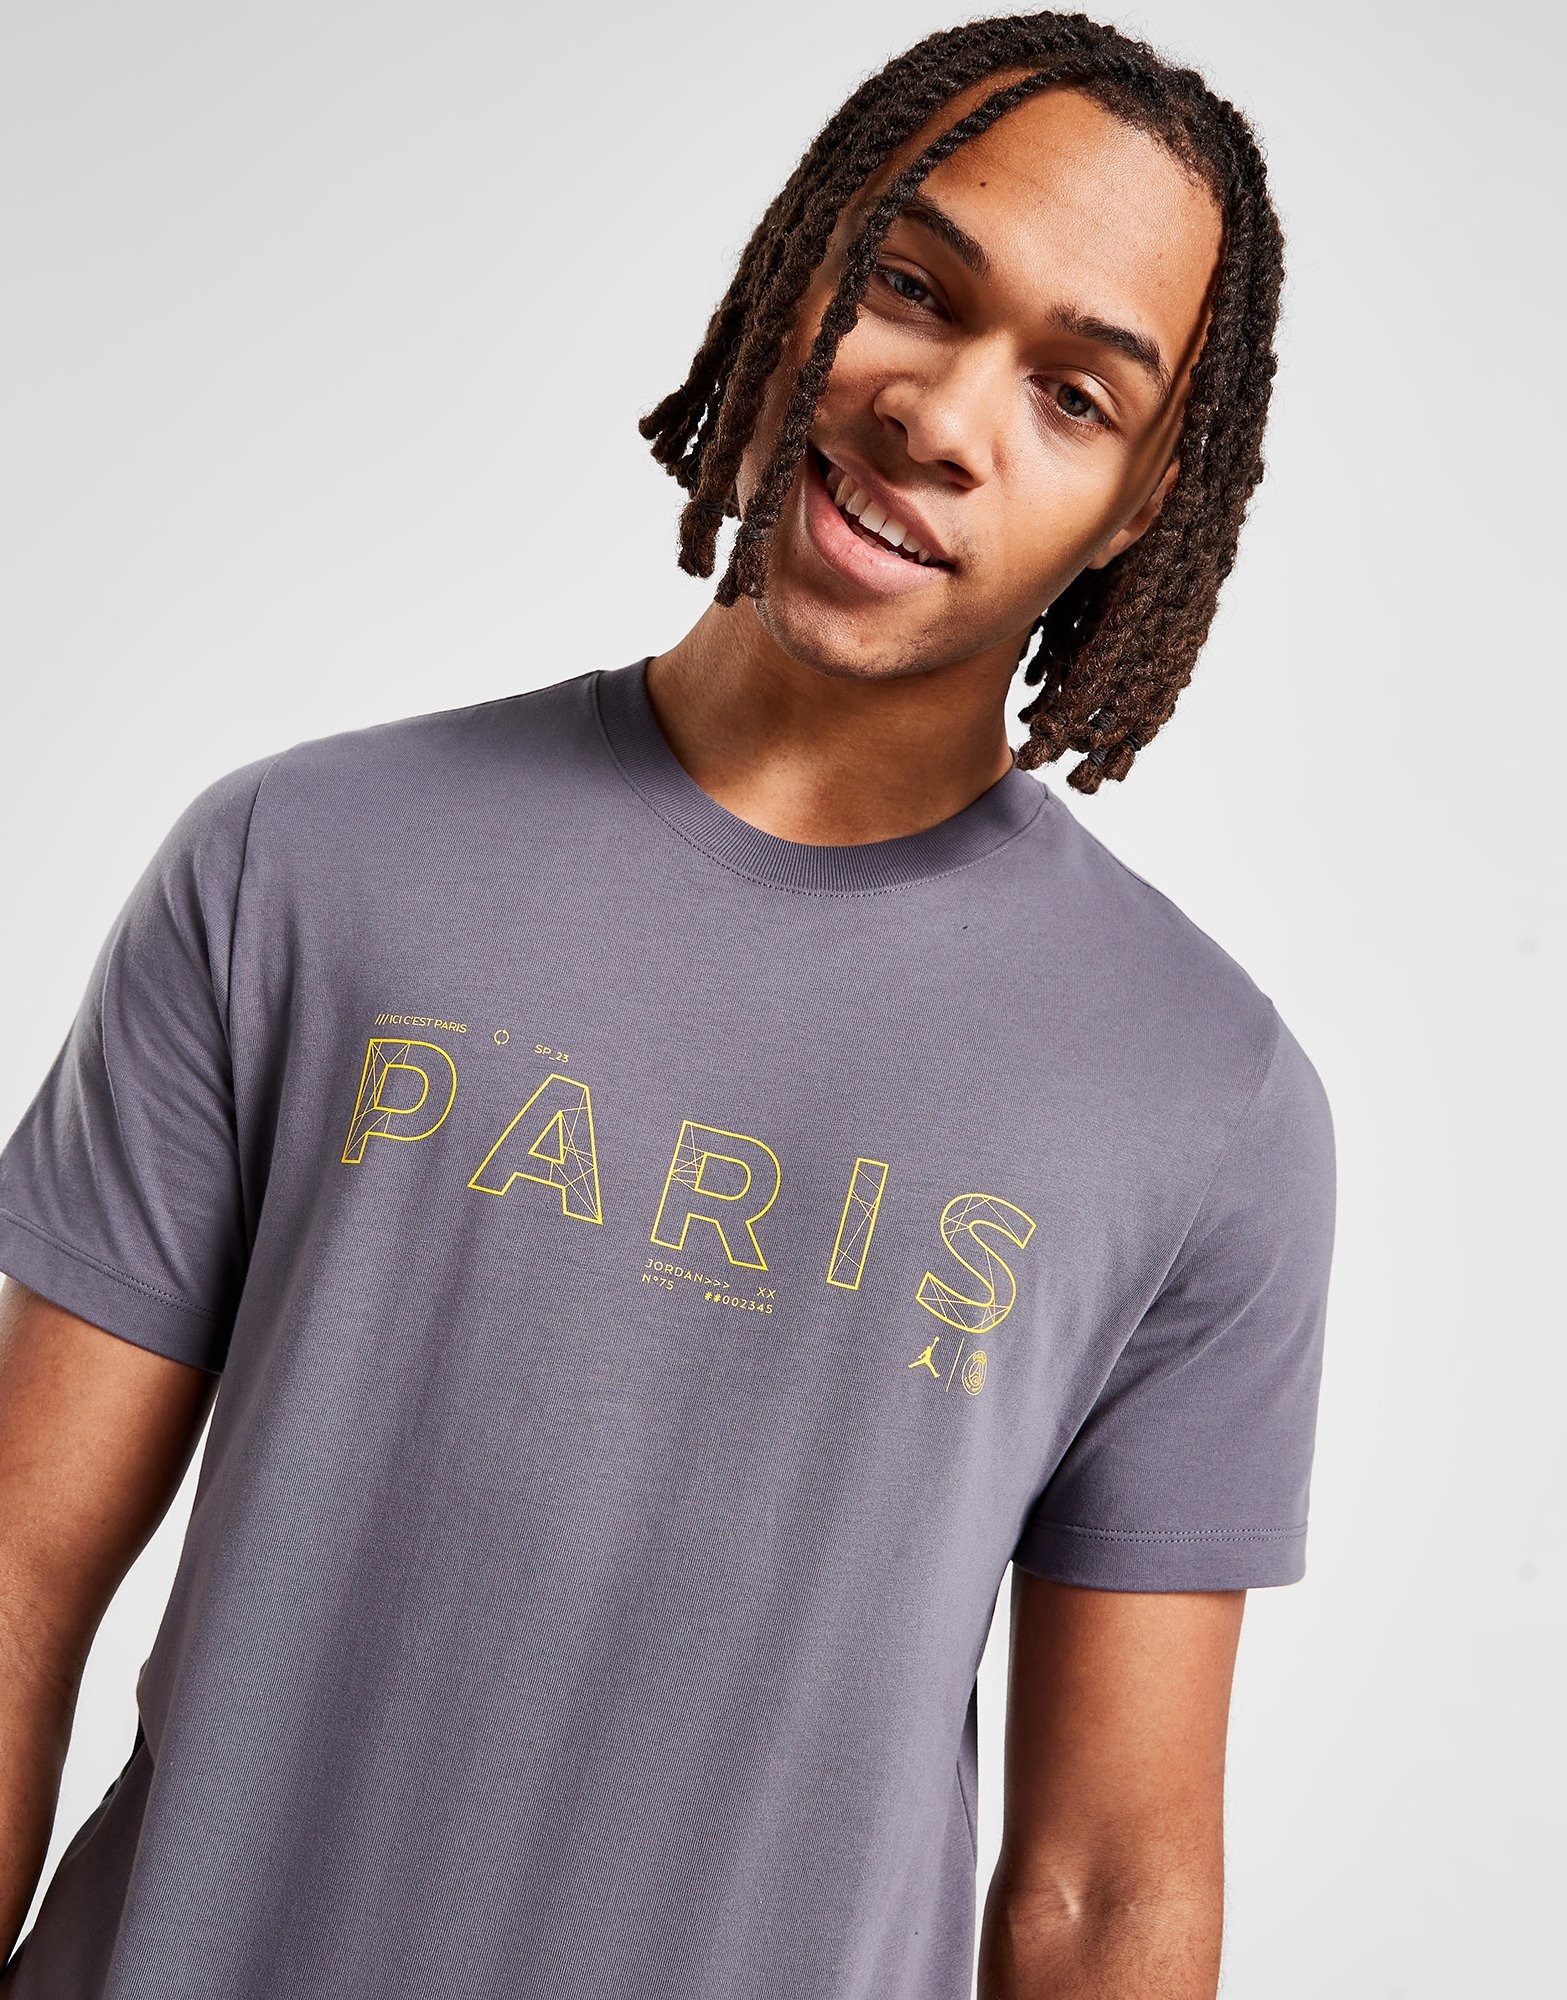 Grey Jordan Paris Saint Germain Short Sleeve T-Shirt JD Sports UK